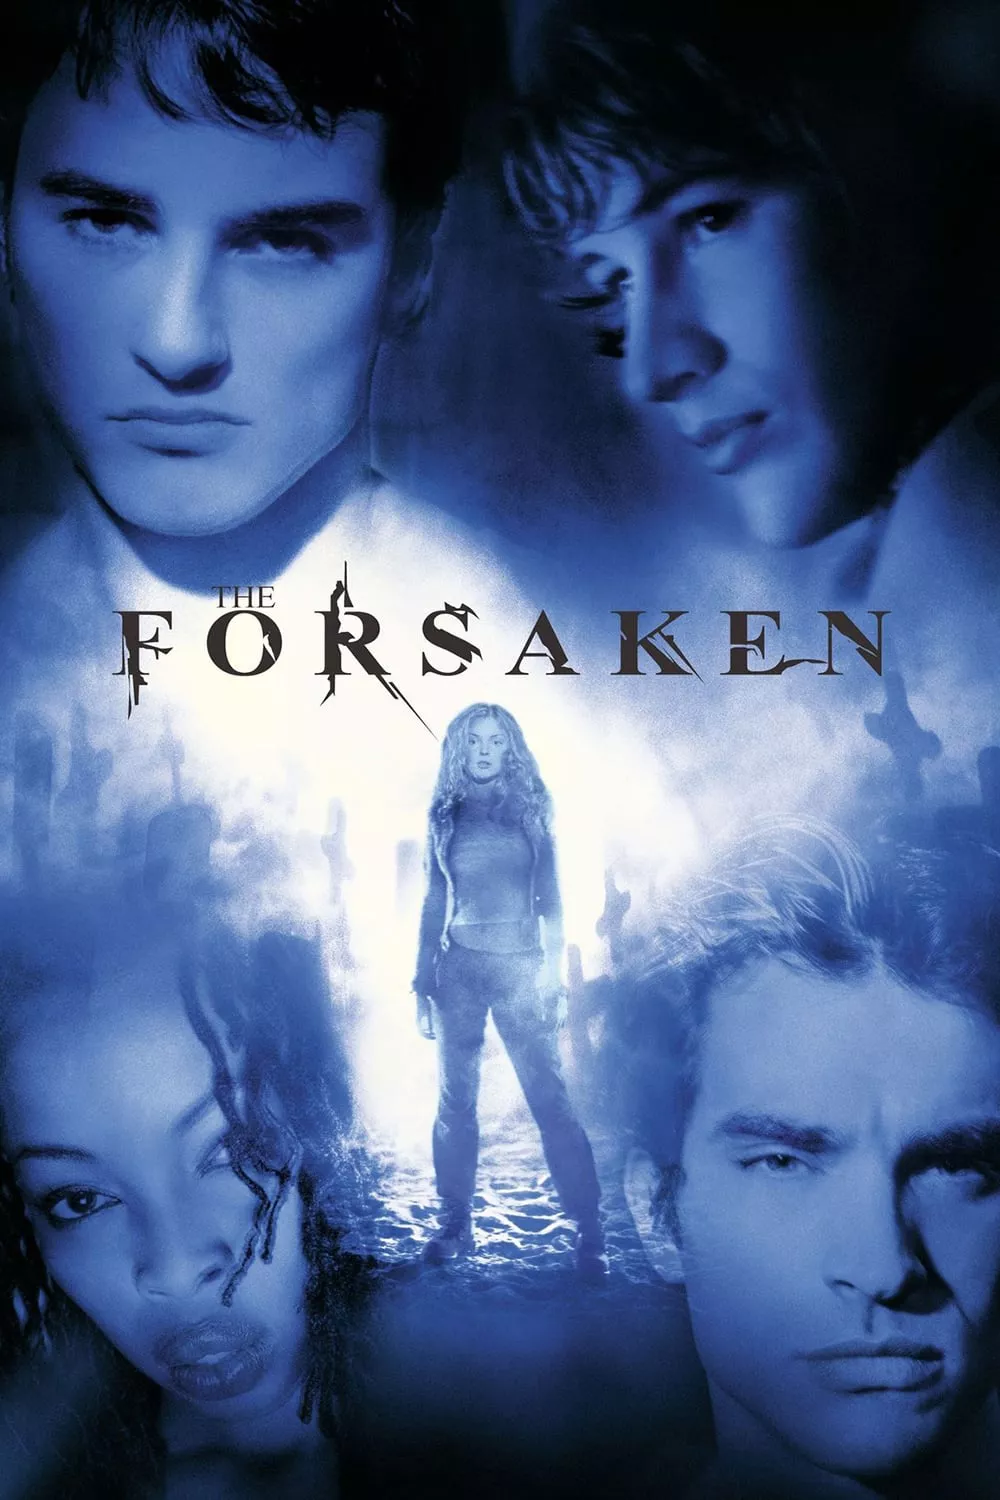 The Forsaken | The Forsaken (2001)